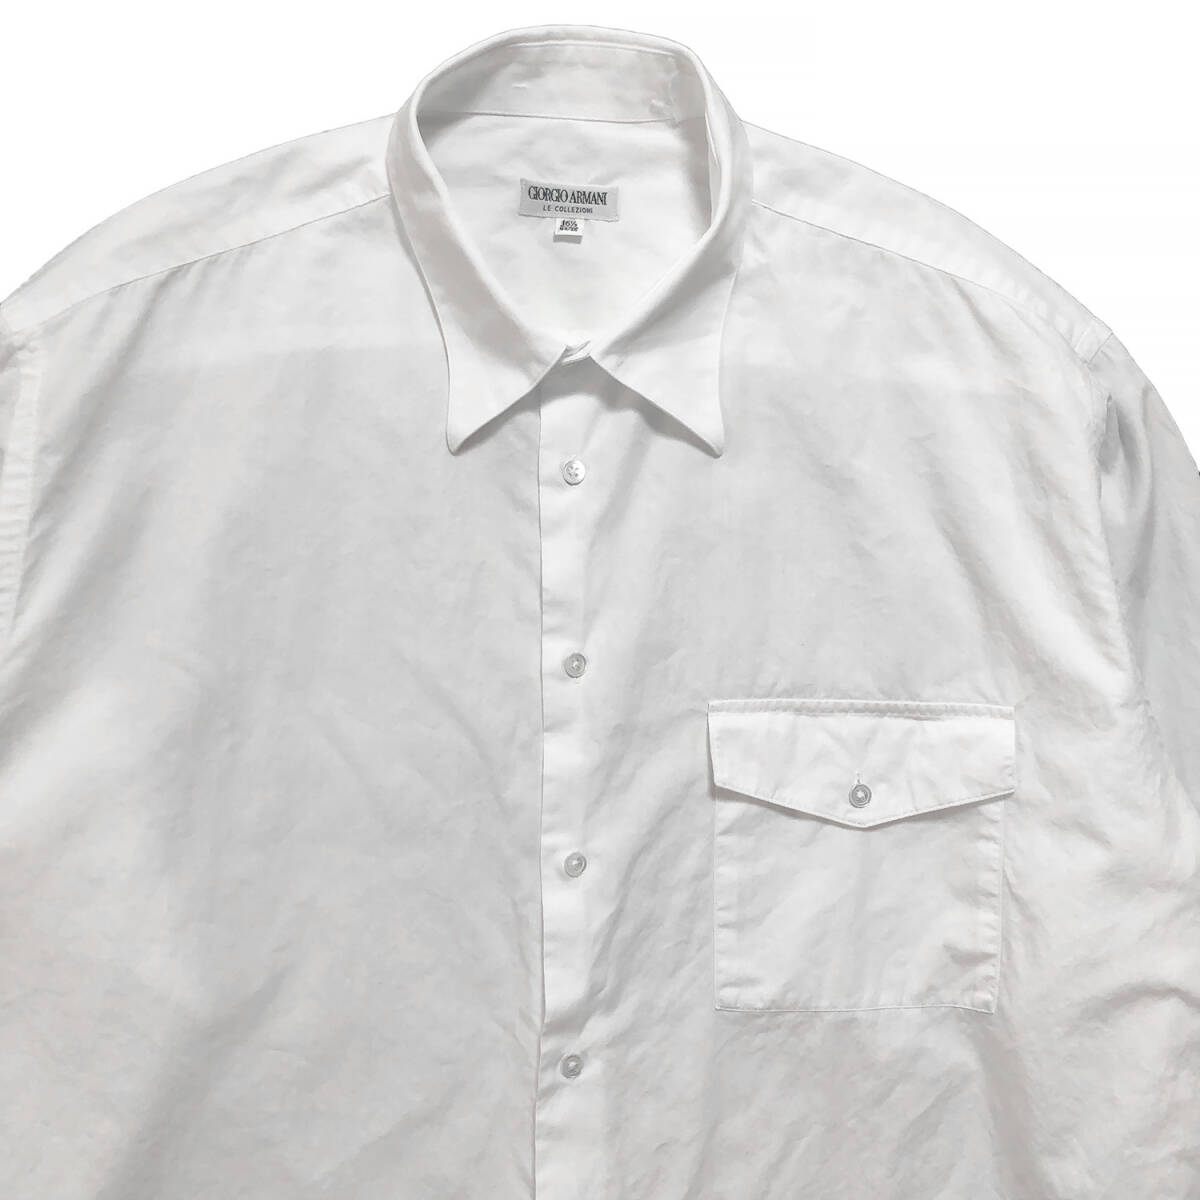 USA 古着 GIORGIO ARMANI ジョルジオアルマーニ ホワイトシャツ 長袖シャツ ドレスシャツ メンズXL相当 大きいサイズ 中古  BG0720